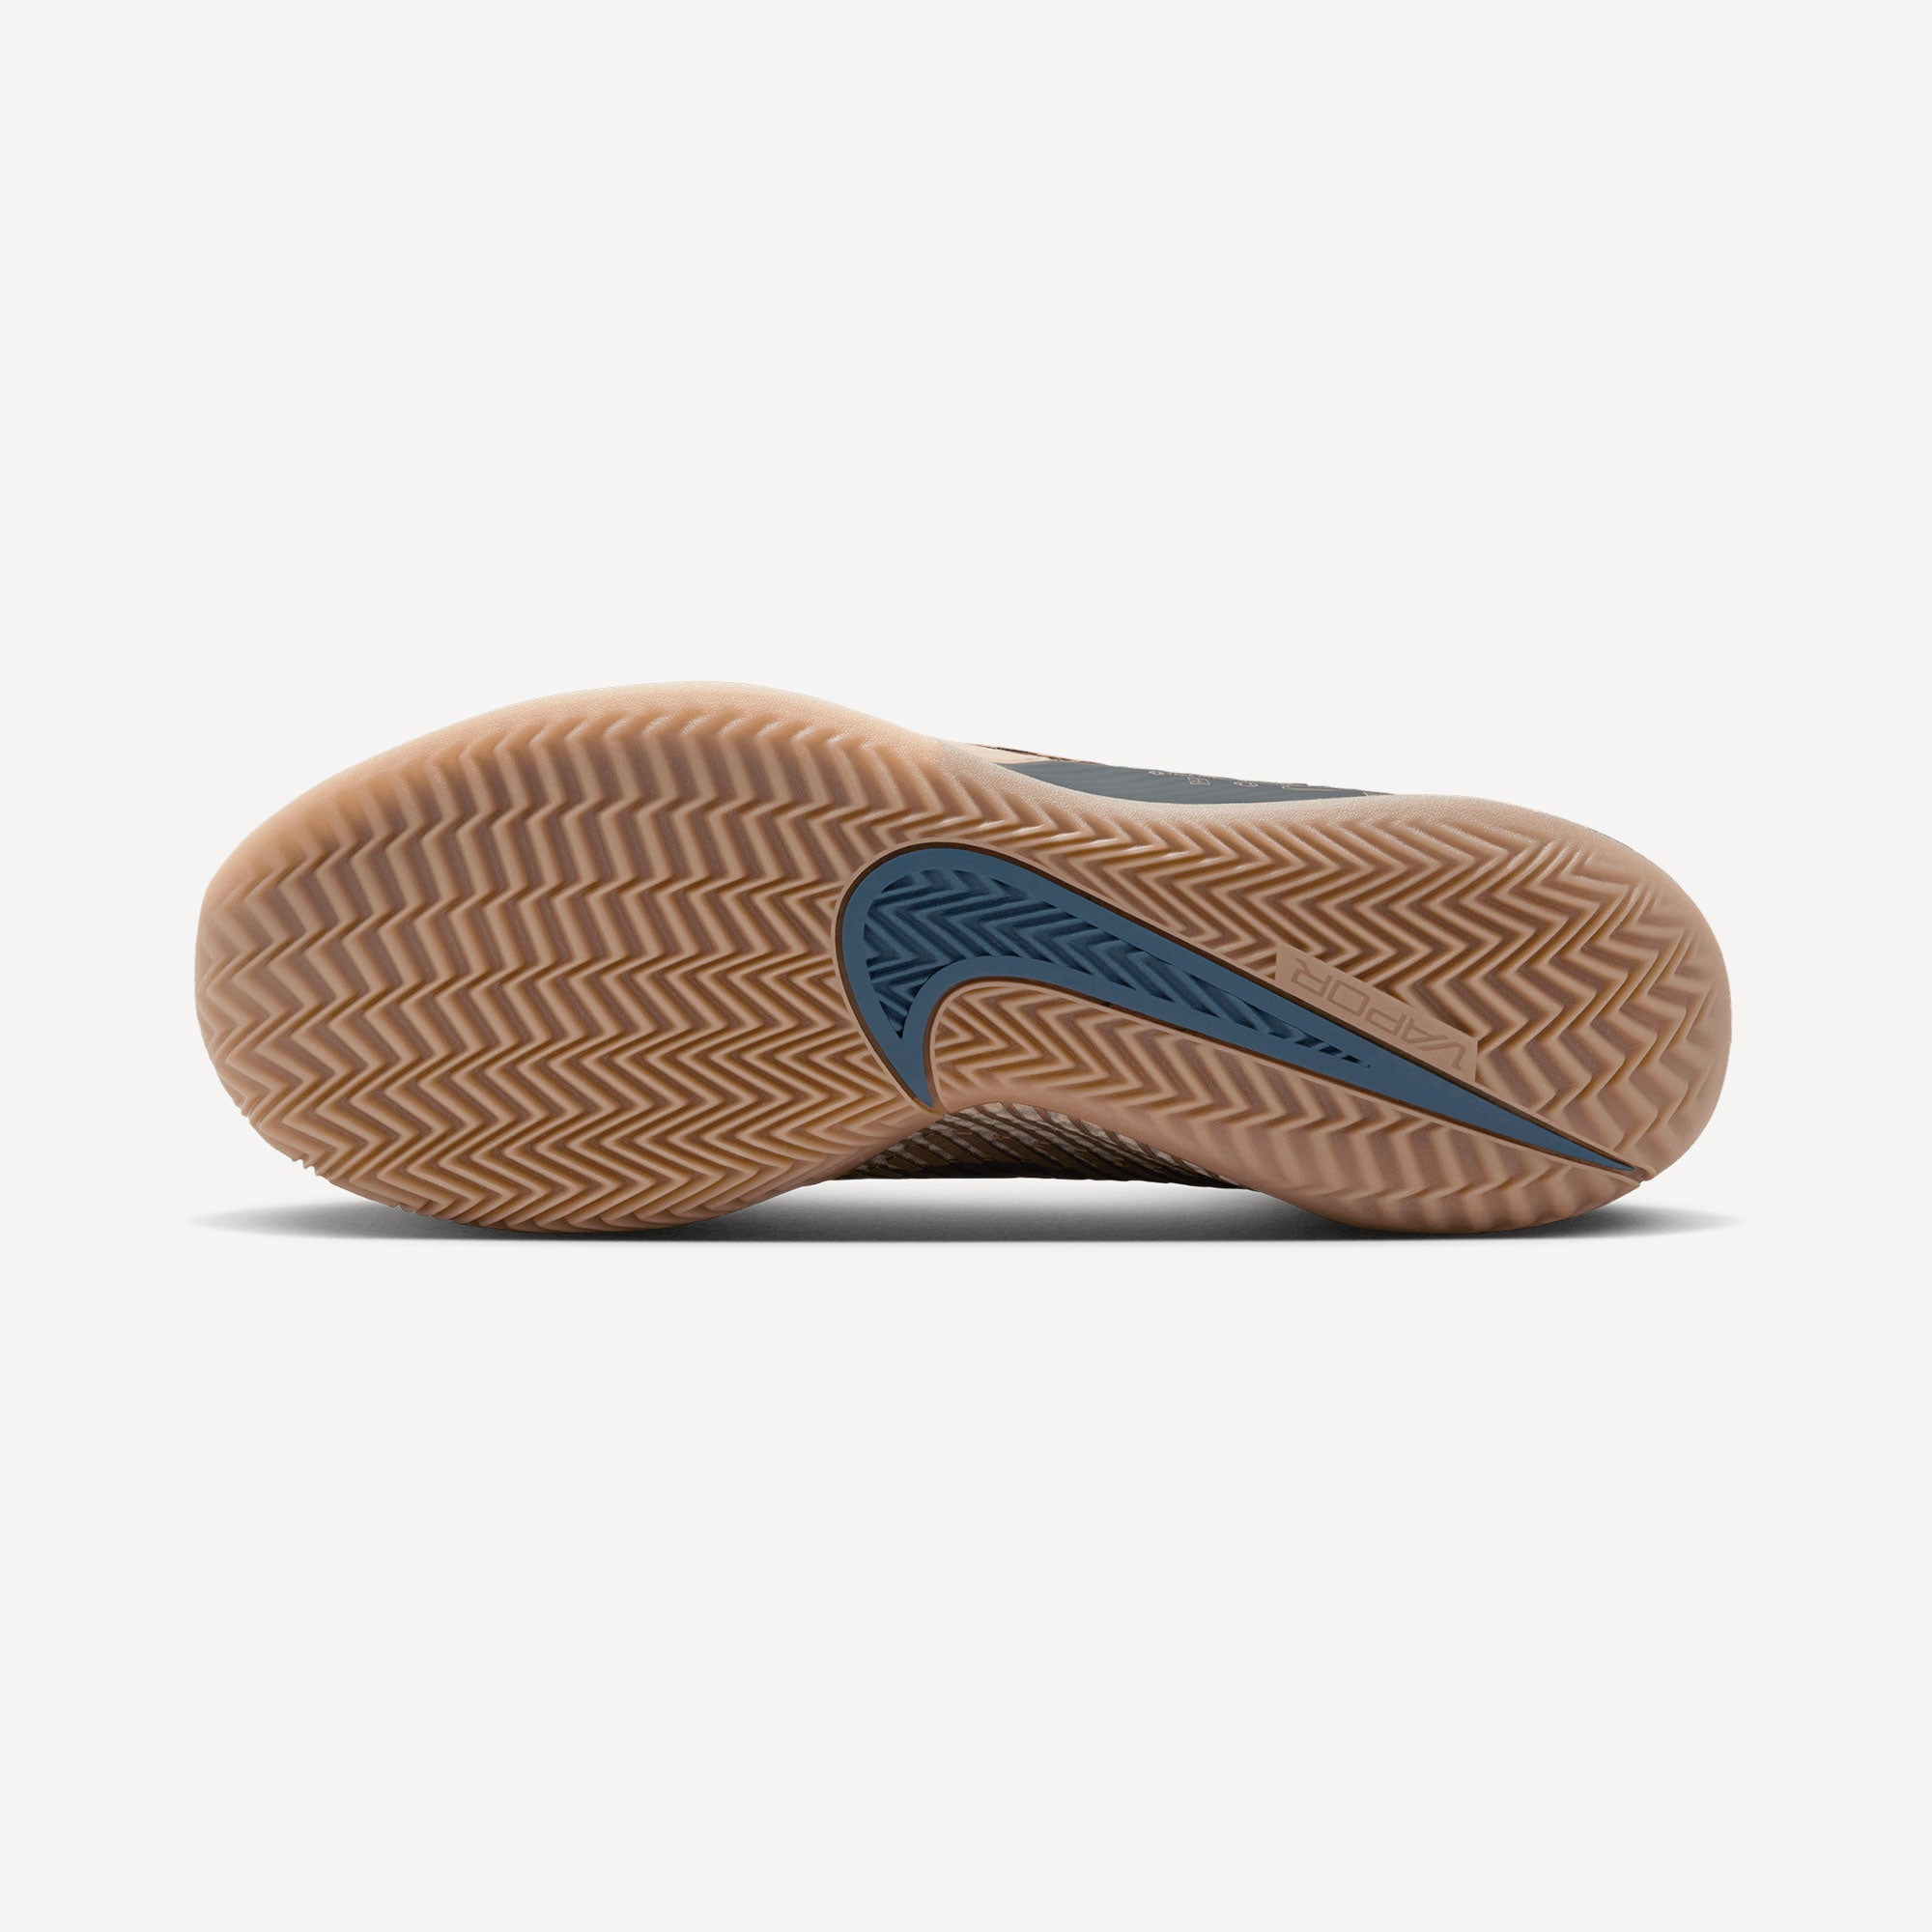 NikeCourt Air Zoom Vapor 11 Premium Men's Clay Court Tennis Shoes - Sand (2)